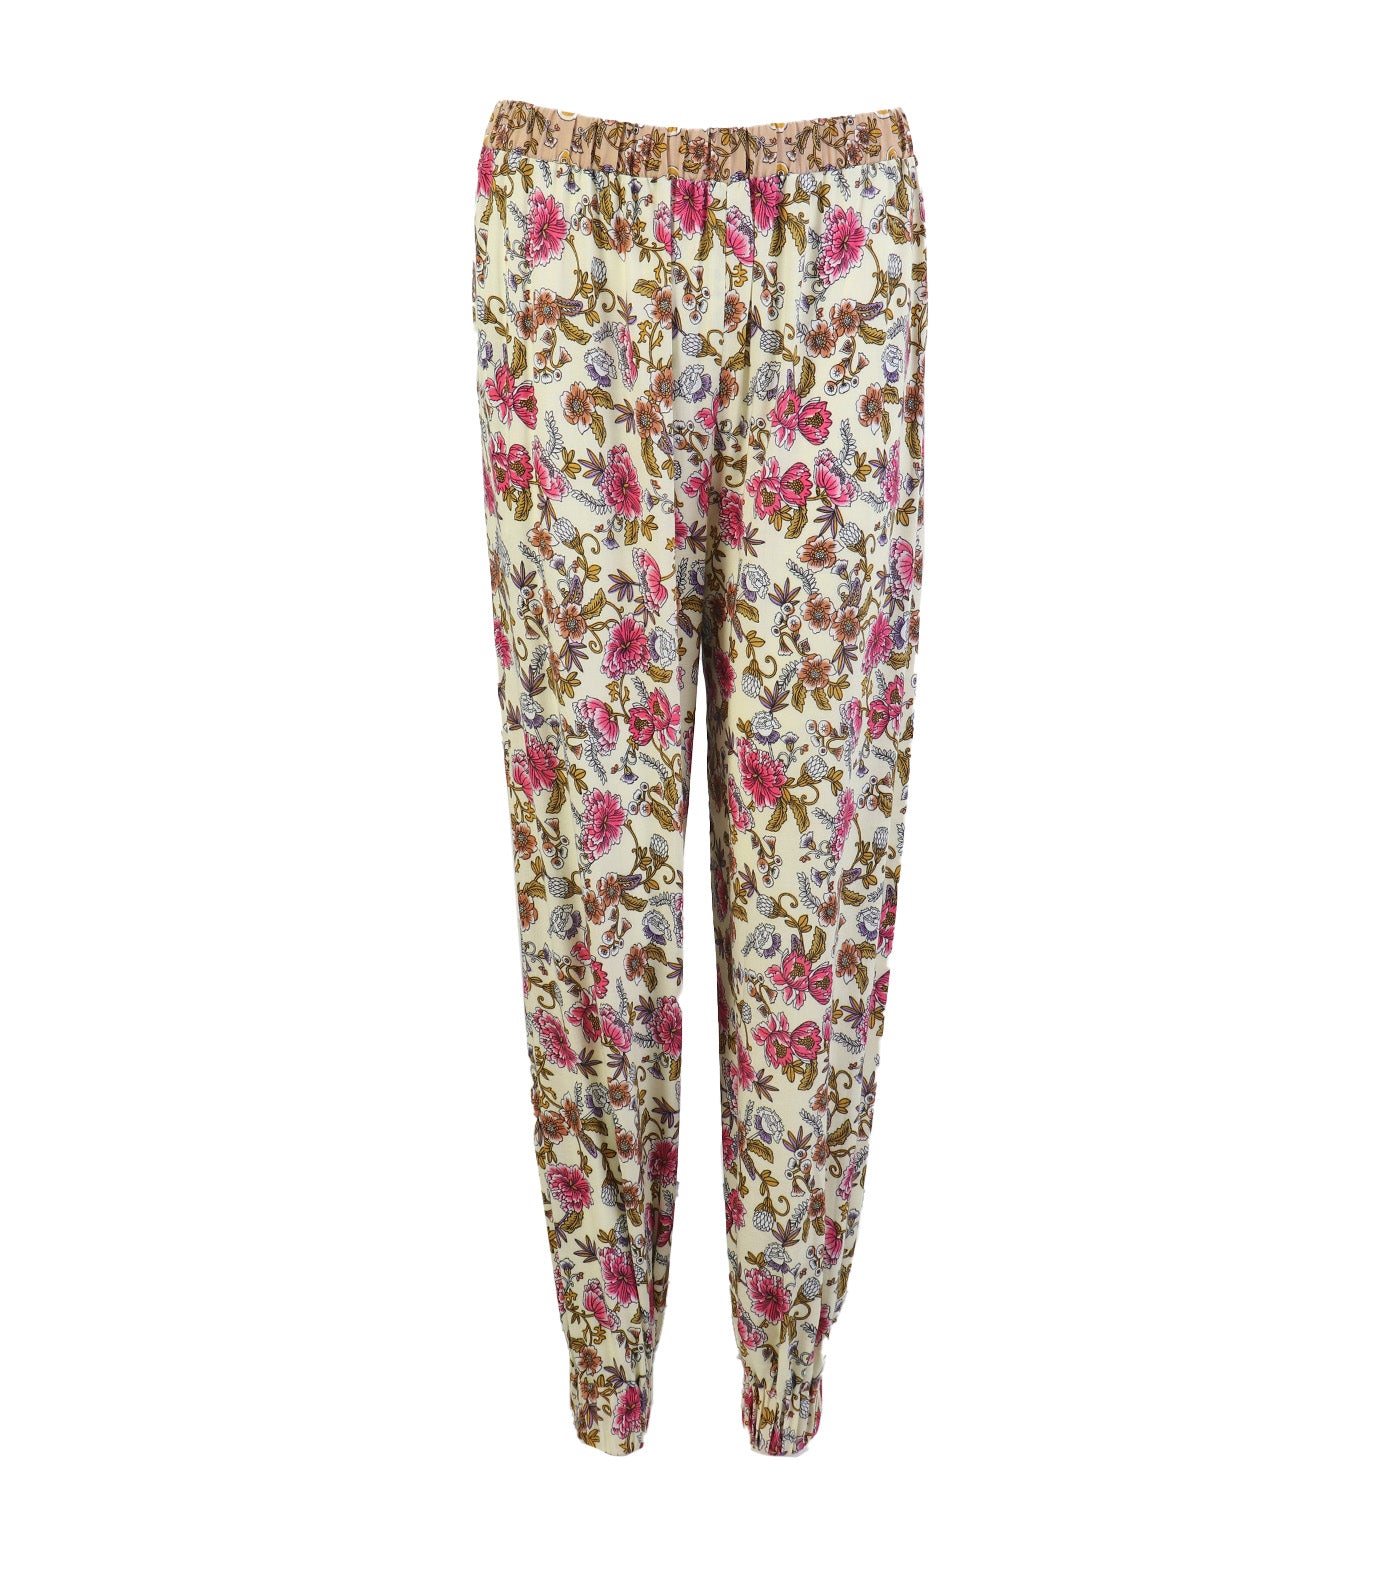 Lotus Resortwear Lanisa Multicolor Print Pants Beige